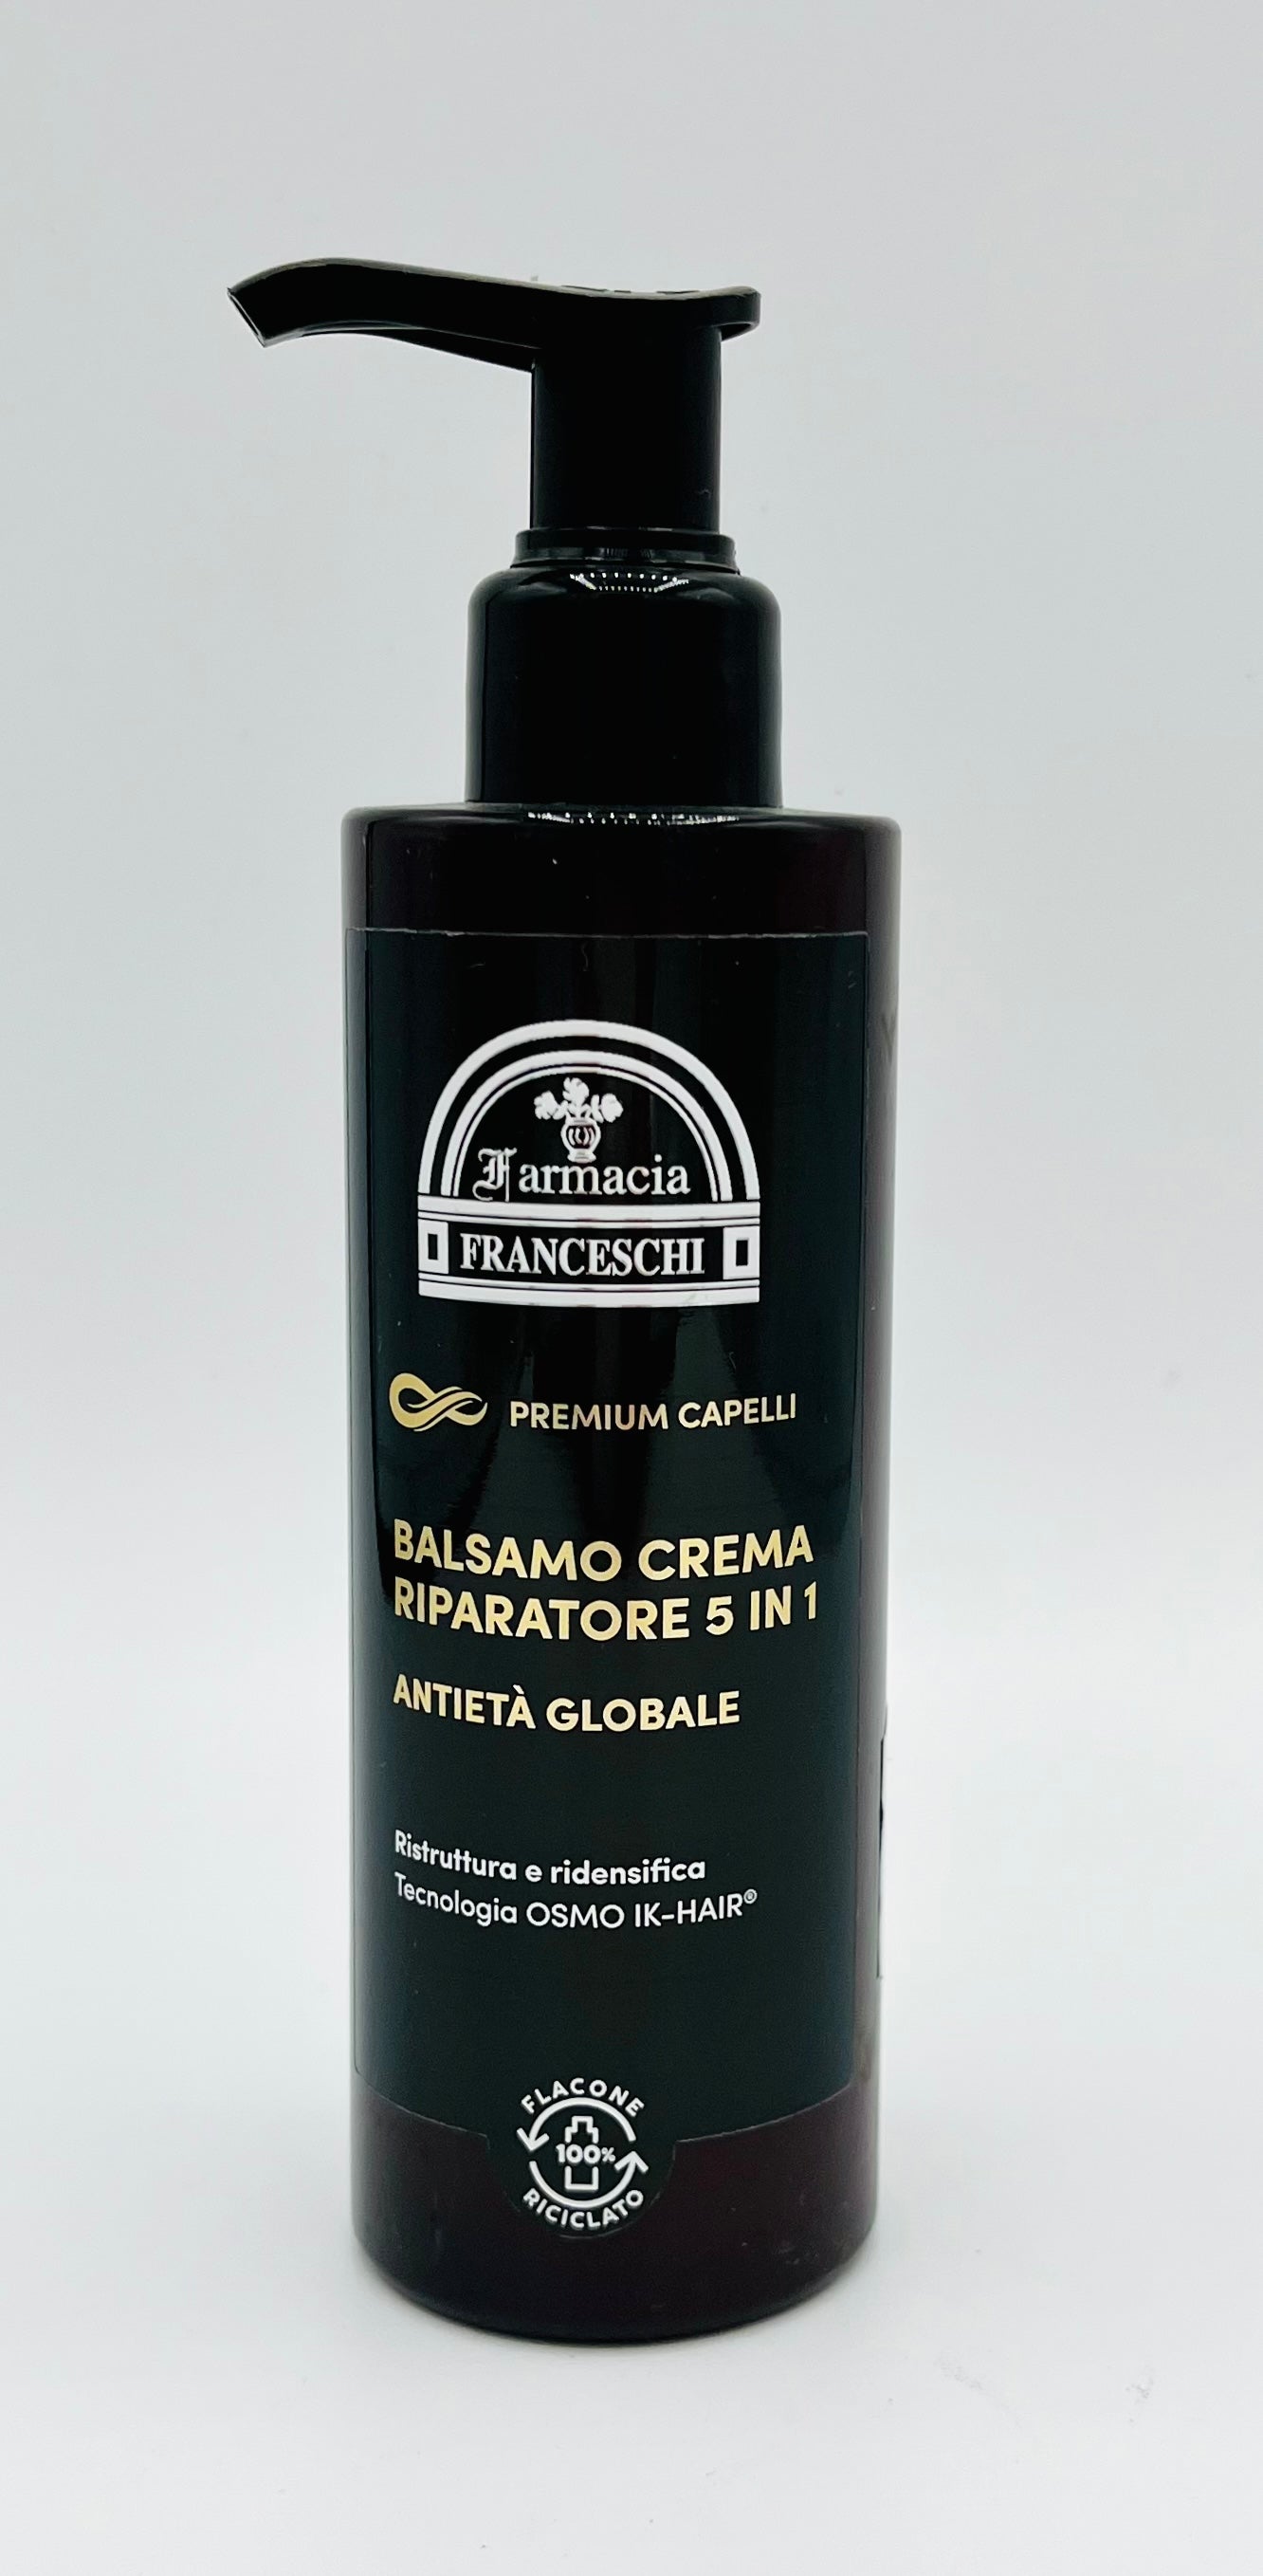 Balsamo-Crema Ripartore 5 in 1